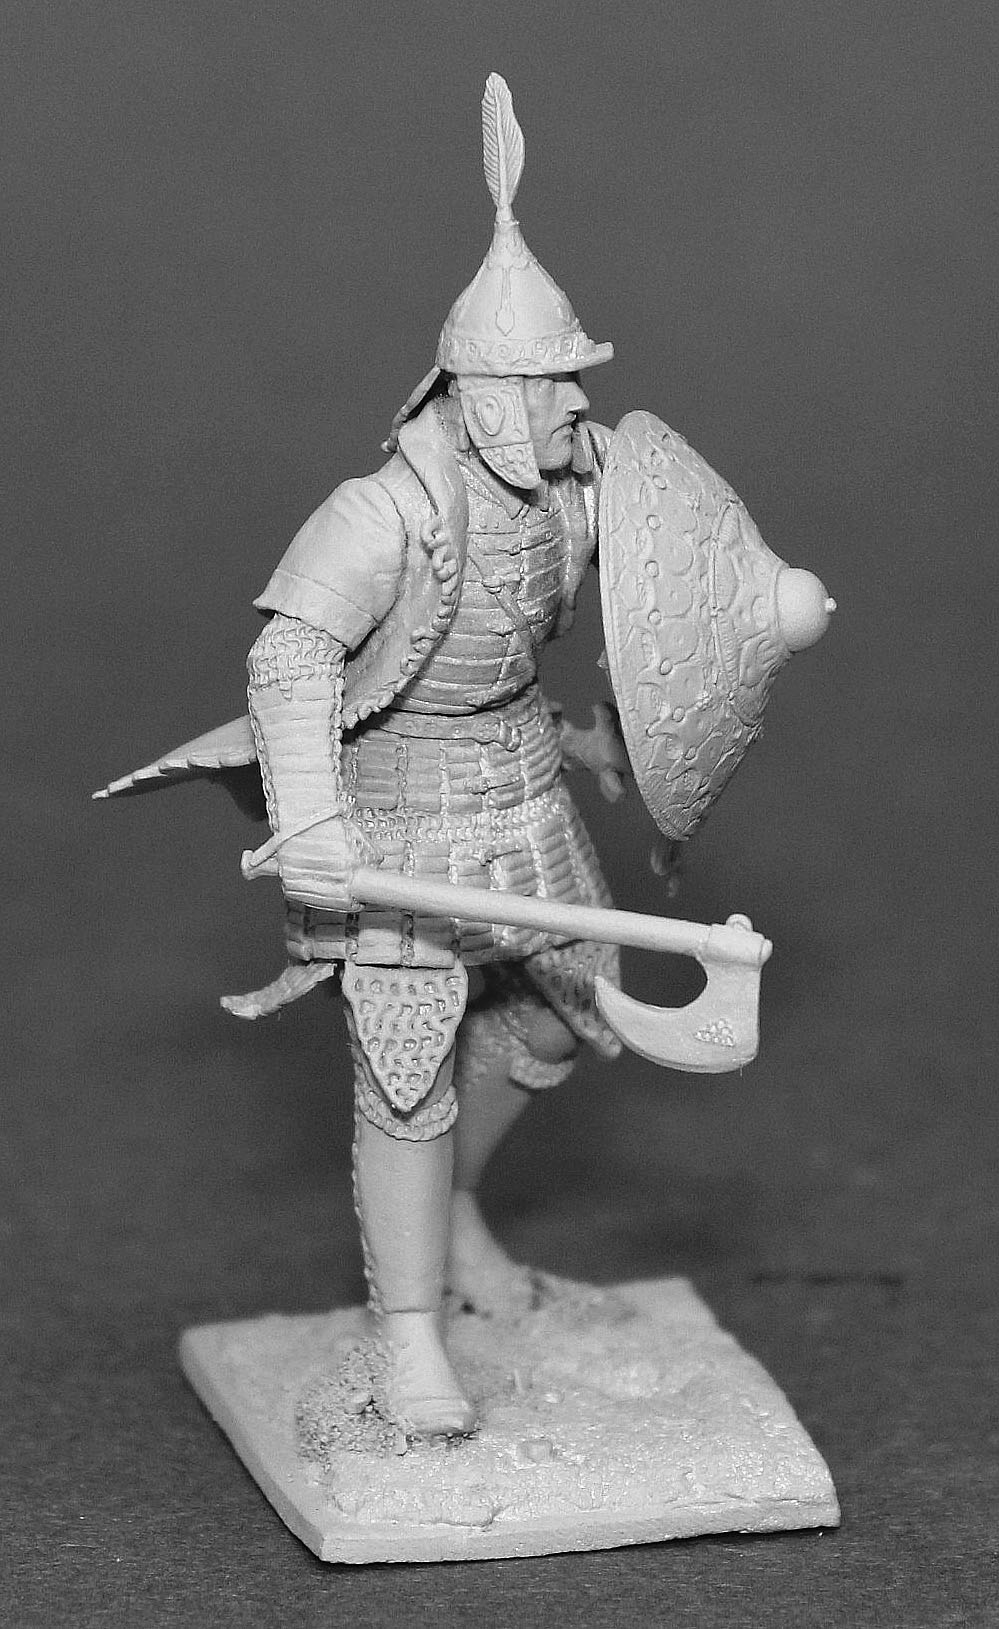 Ottoman infantryman XIVc.